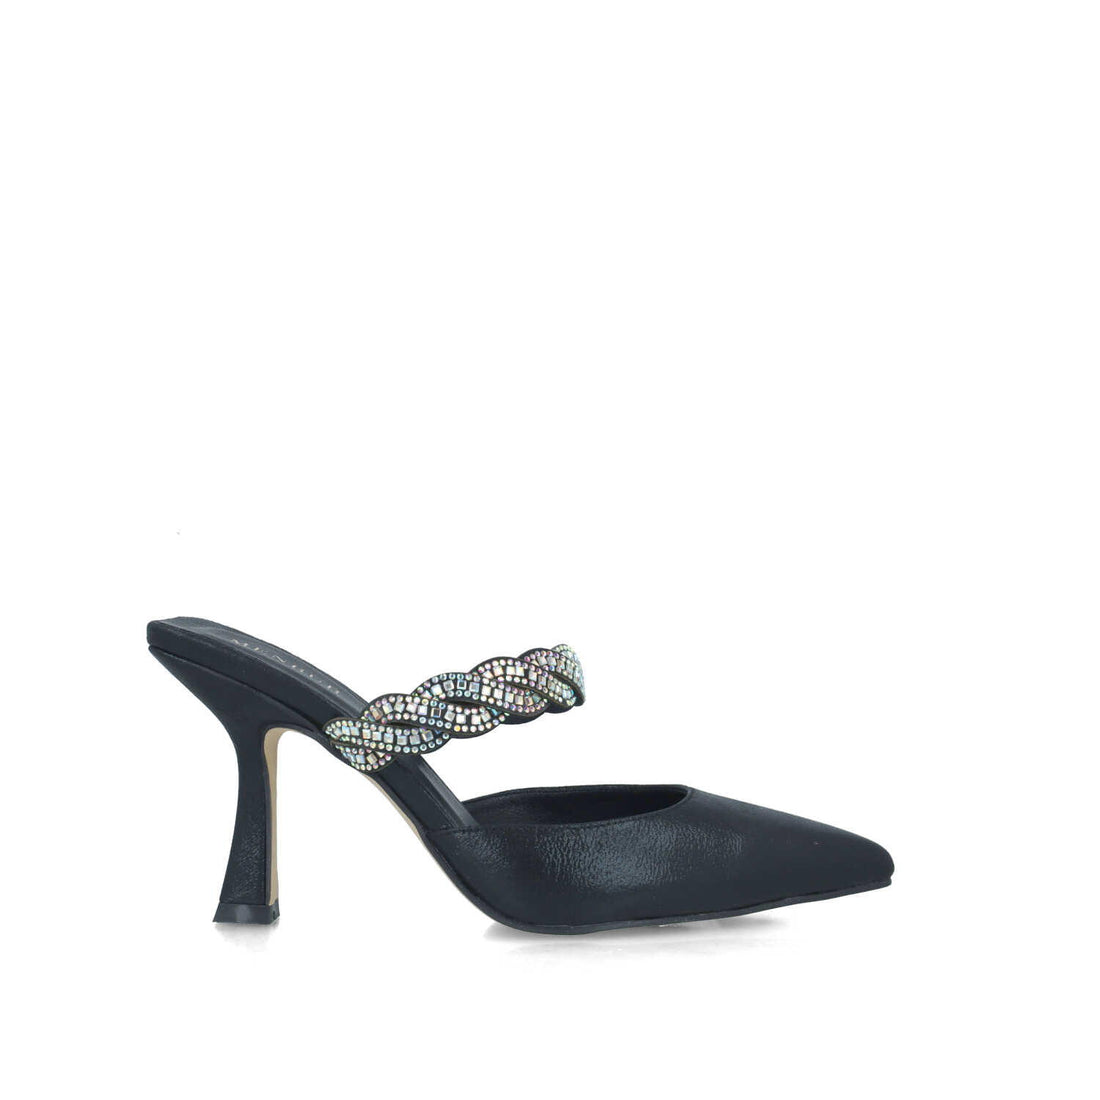 Black Sandal With Embellished Strap_24795_01_01